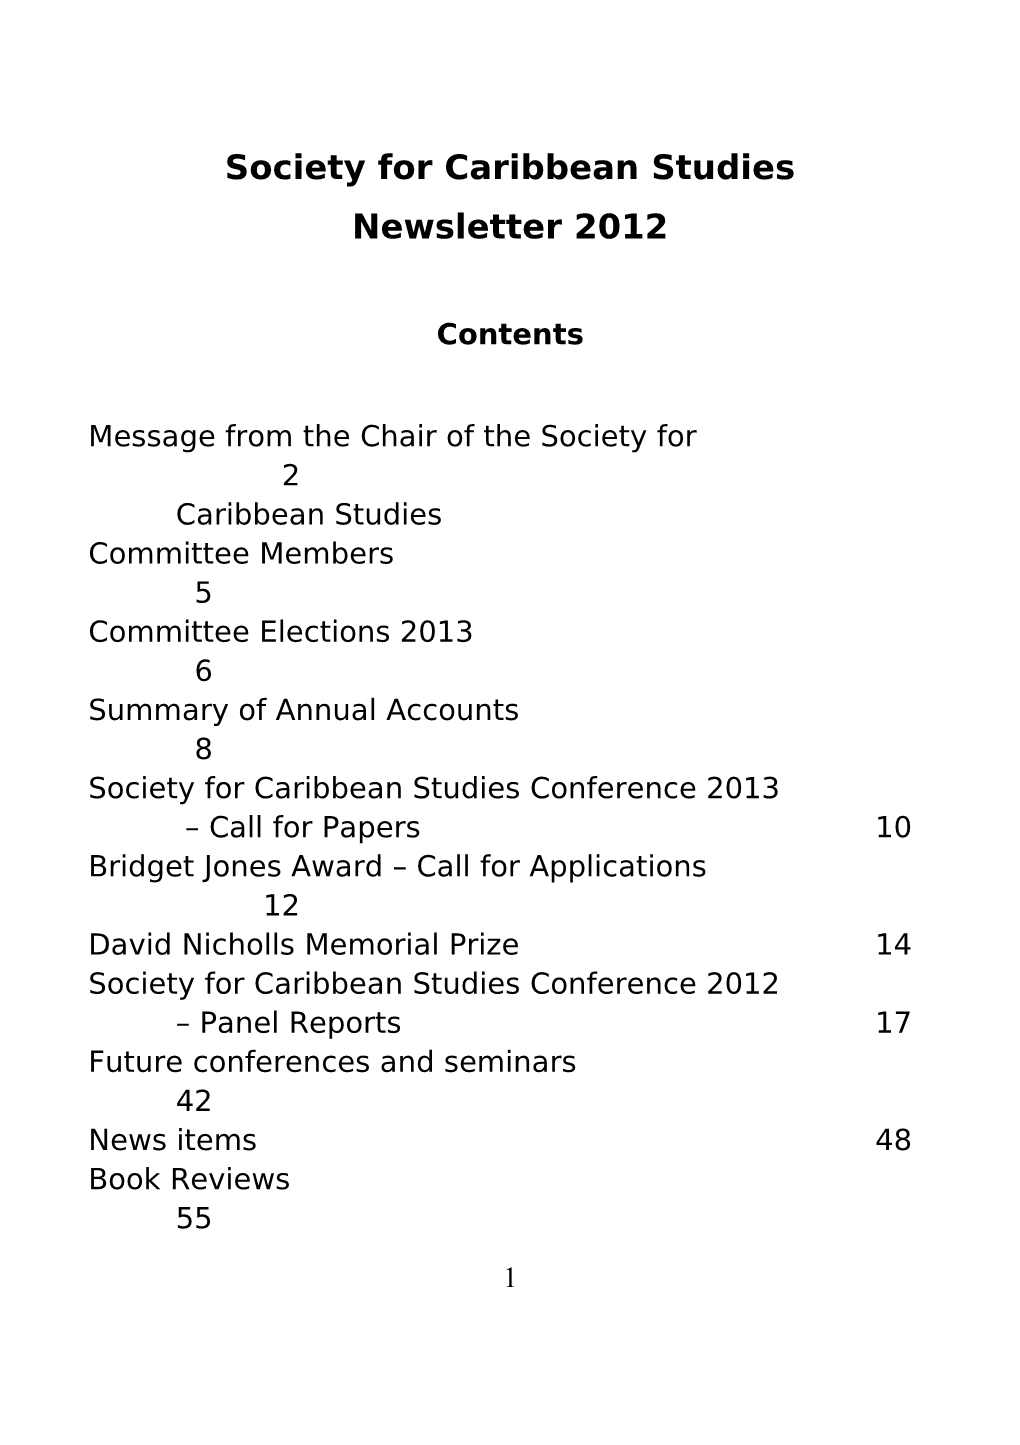 The Society for Caribbean Studies Newsletter